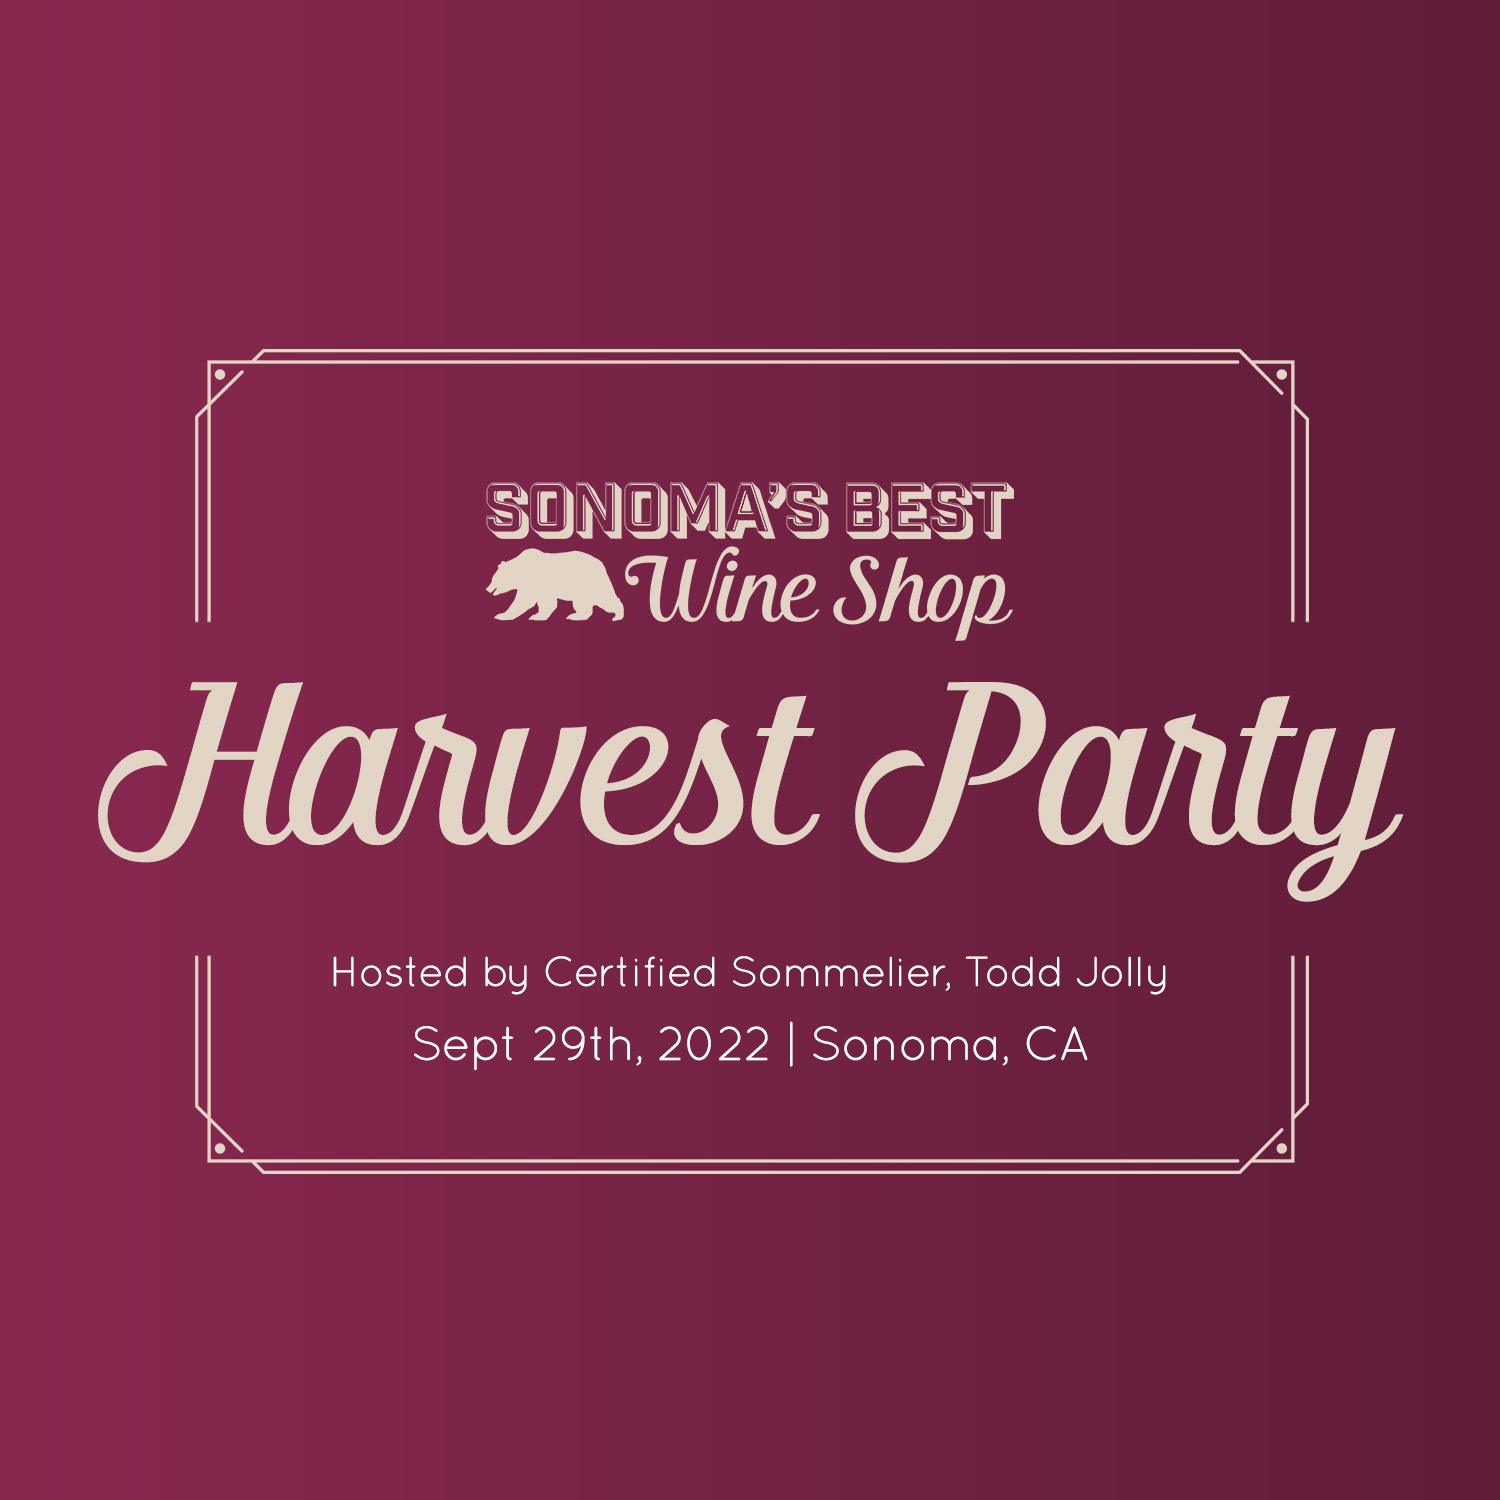 Sonomas Best Harvest Party Square copy